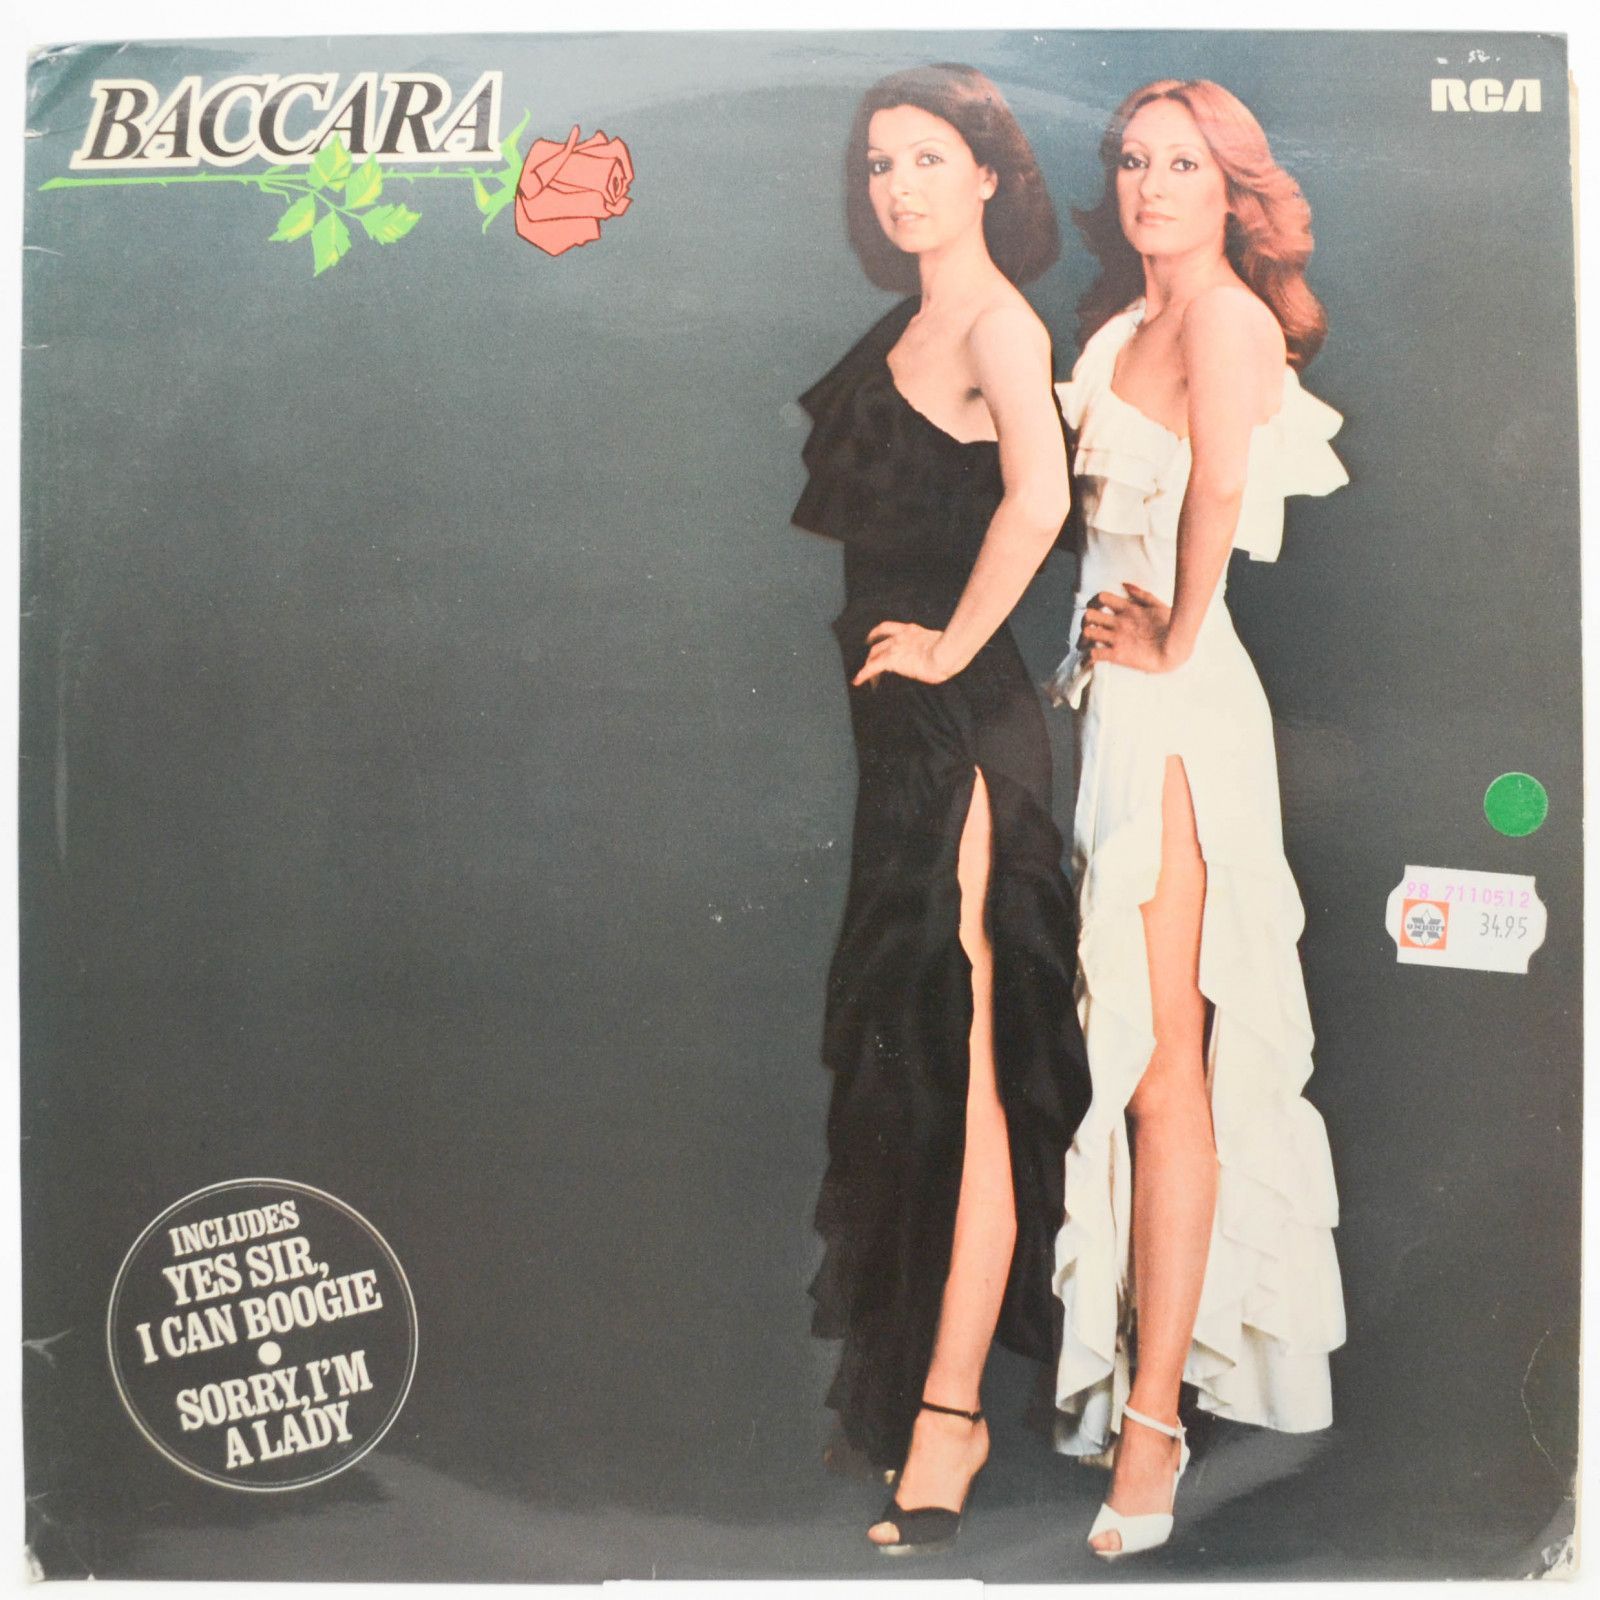 Baccara — Baccara, 1977